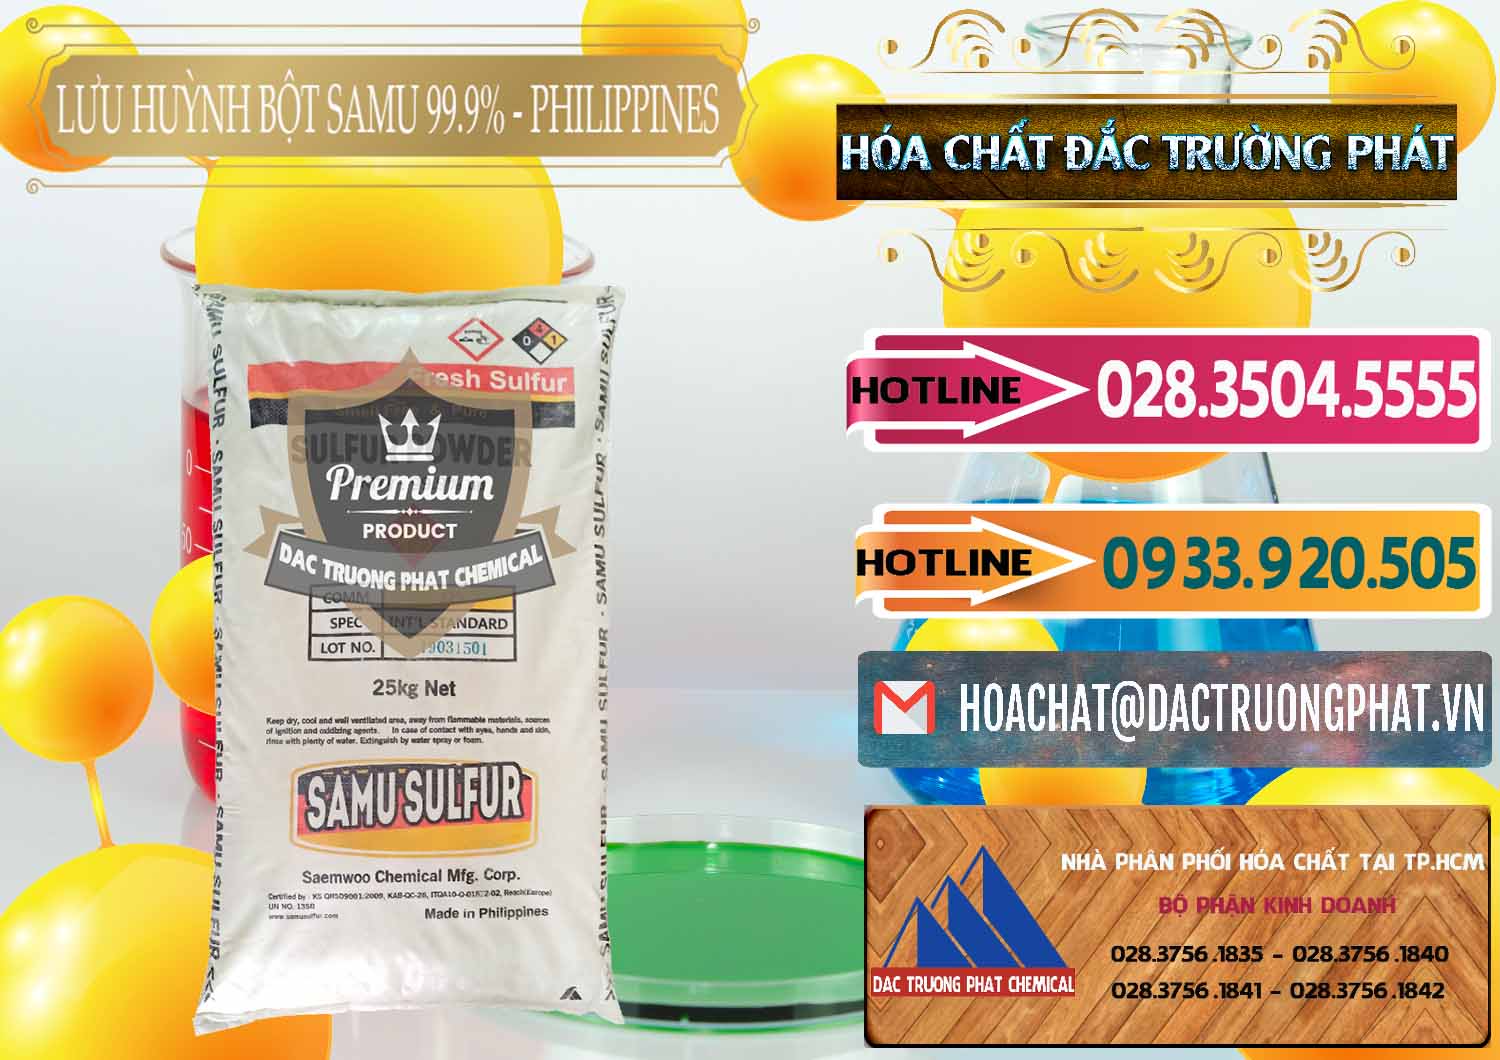 Công ty chuyên kinh doanh - bán Lưu huỳnh Bột - Sulfur Powder Samu Philippines - 0201 - Phân phối - nhập khẩu hóa chất tại TP.HCM - dactruongphat.vn